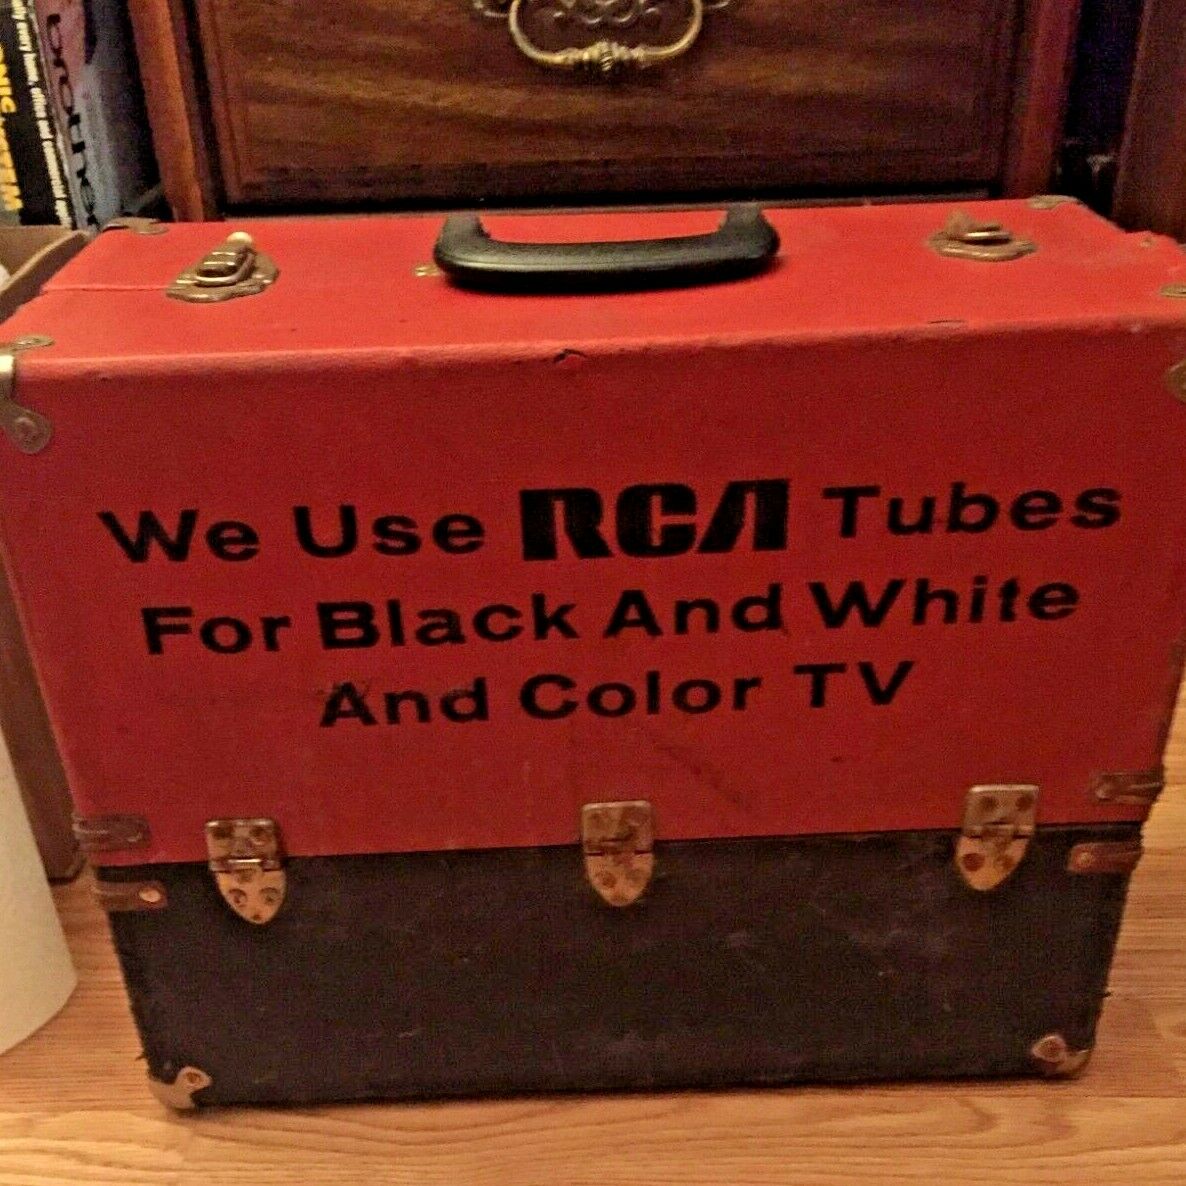 RCA Tube Caddy Restoration